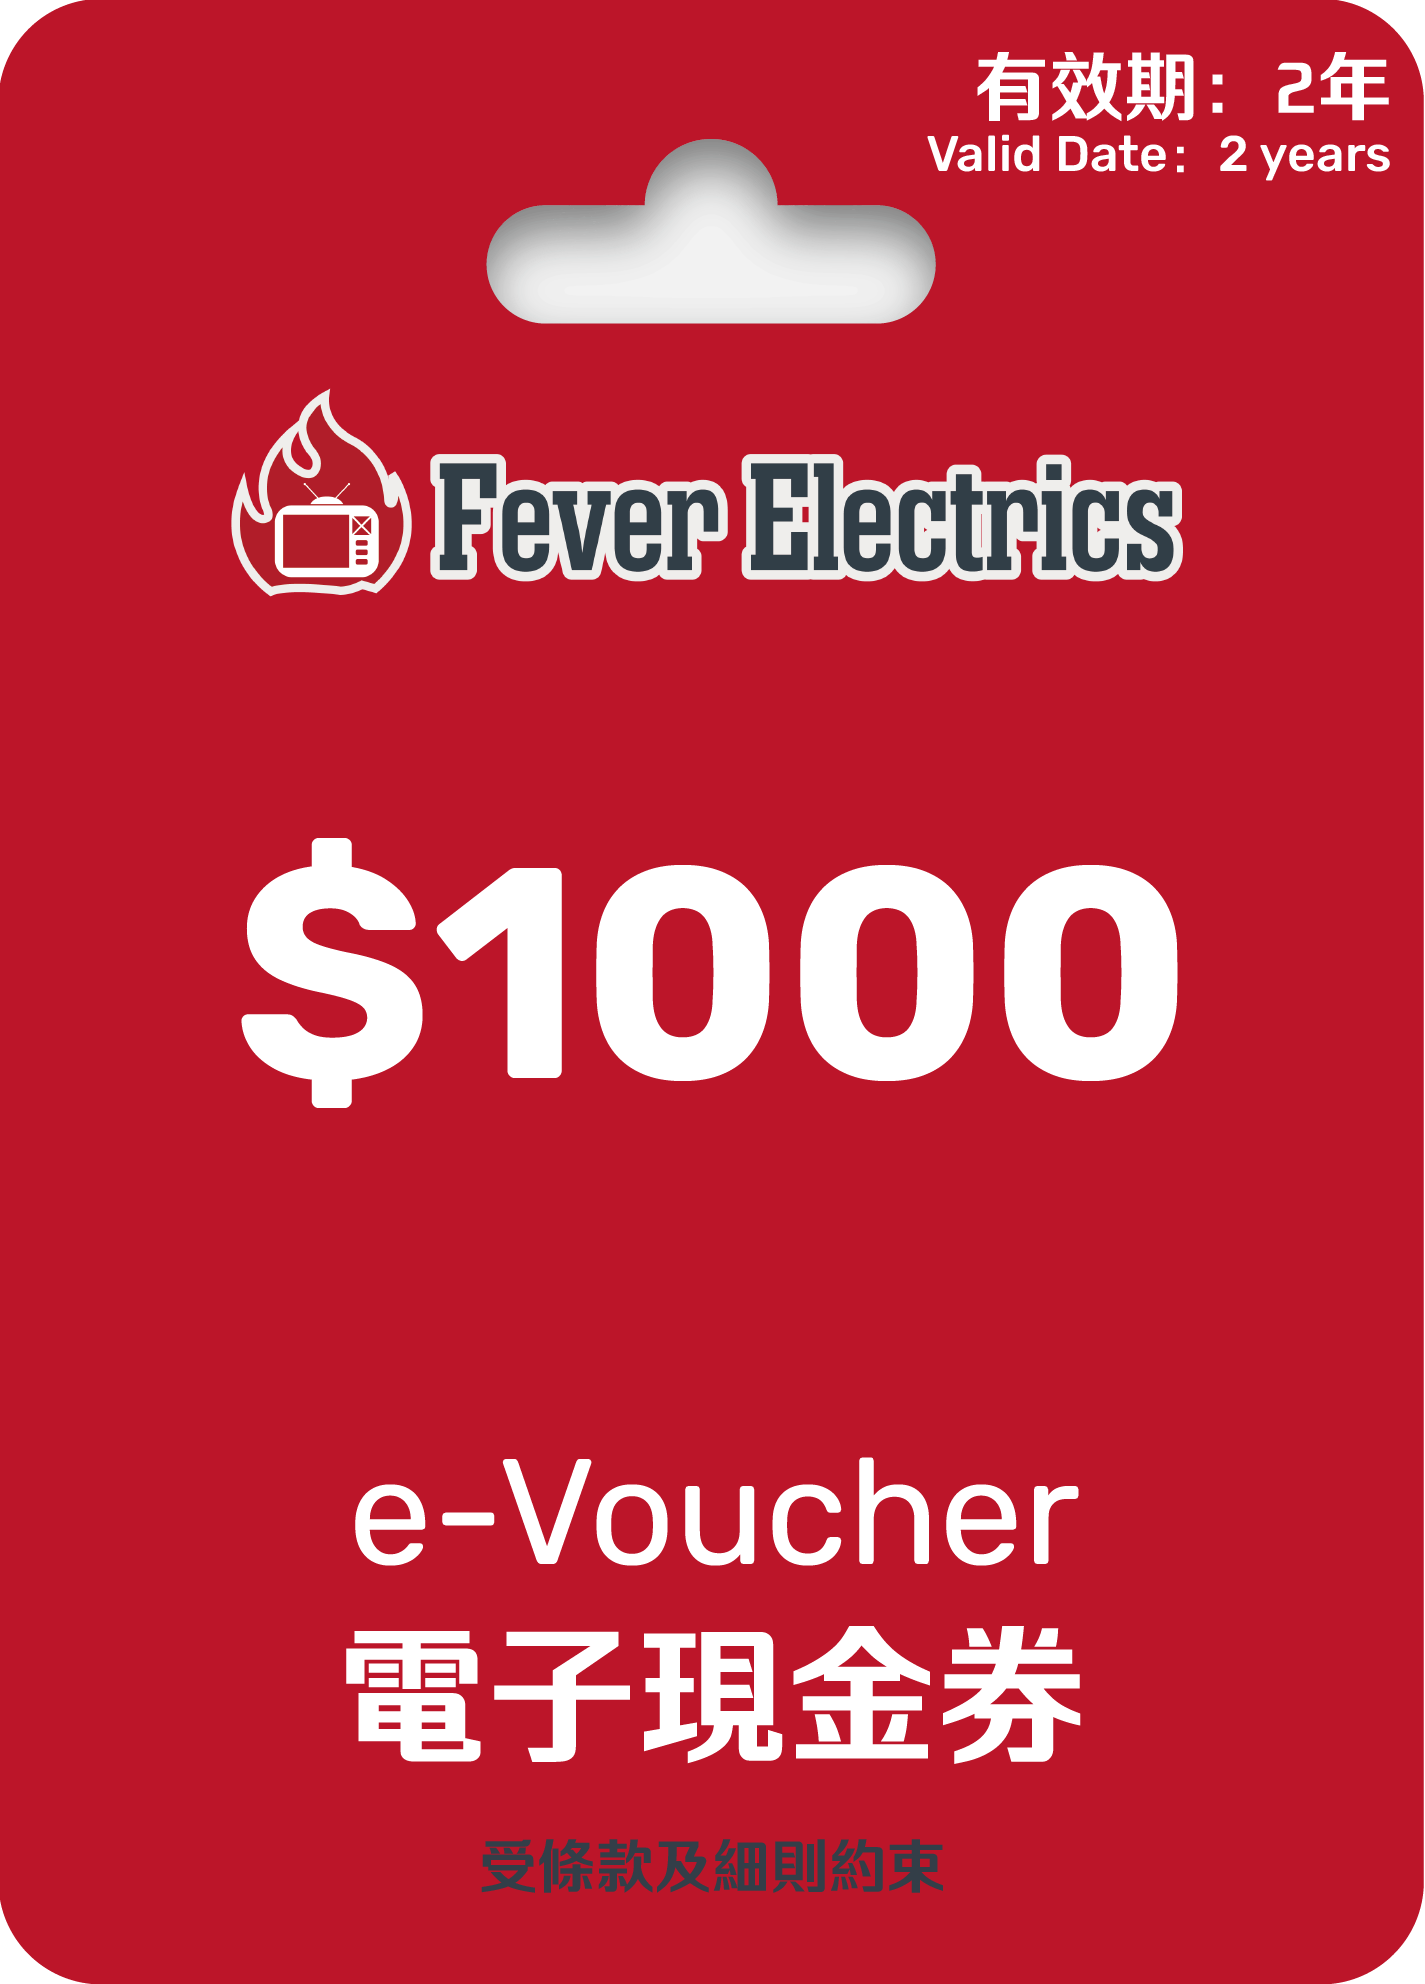 HK$1000 Fever e-Voucher (電子現金券)